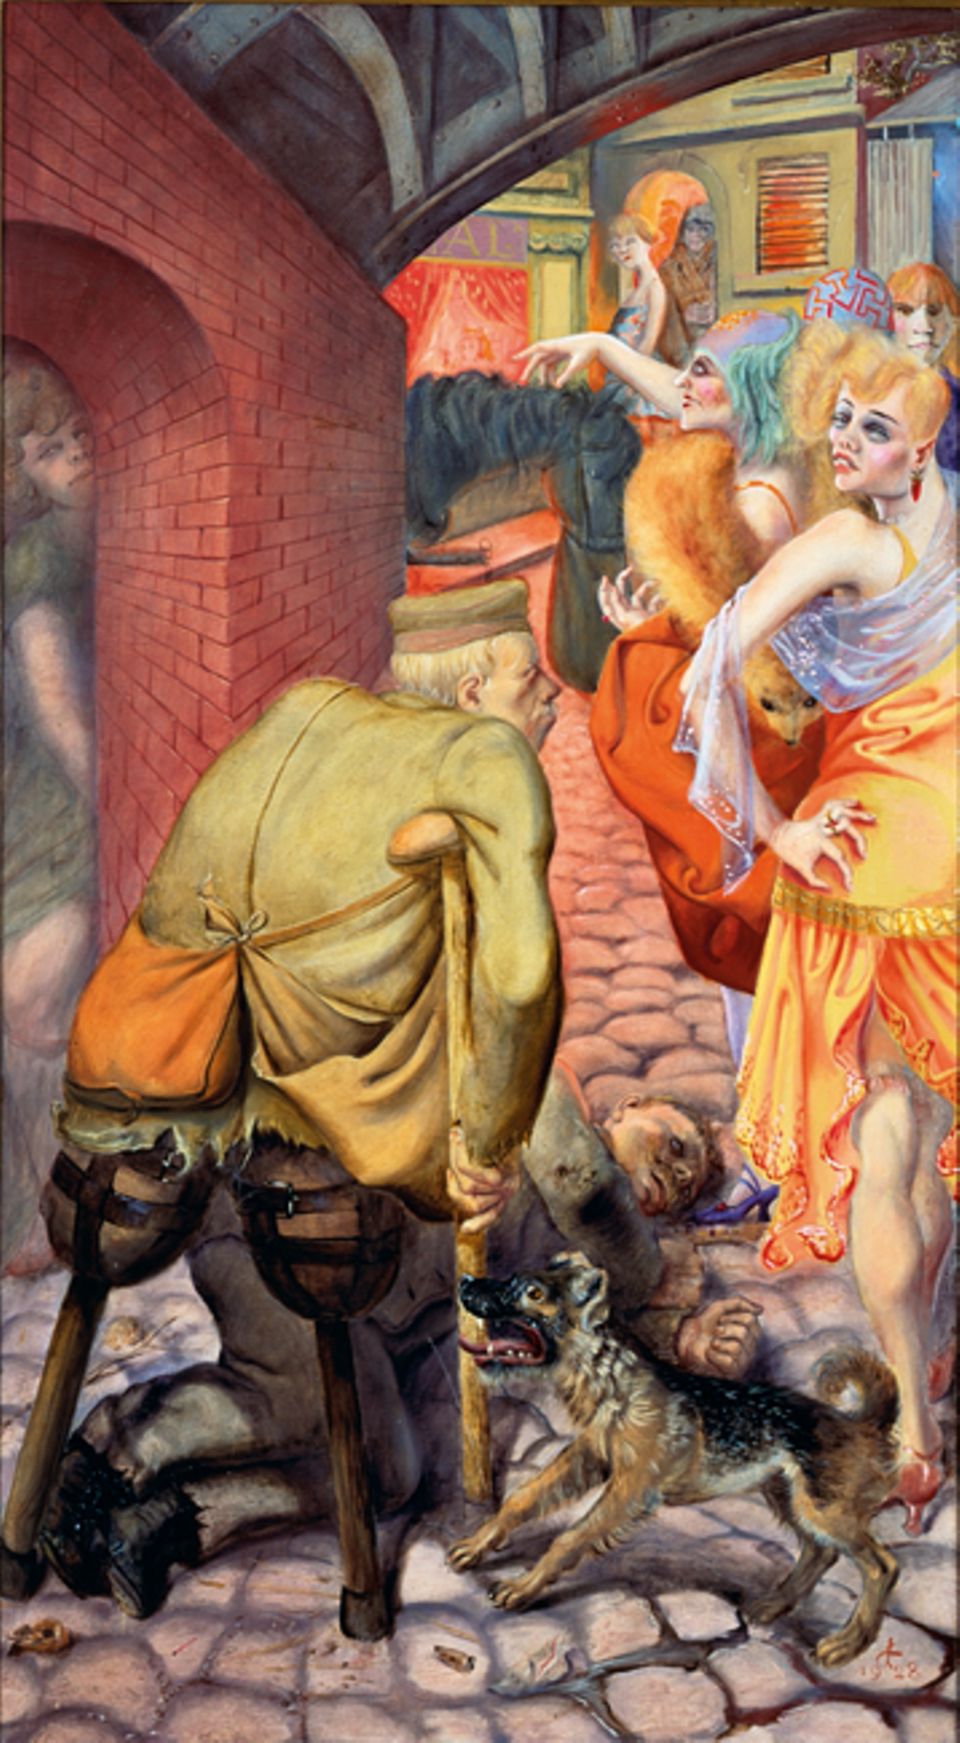 Kunst und Kultur: Der Kriegsversehrte und die Prostituierten sind Teil des Triptychons "Großstadt", das Otto Dix um 1928 malt. Mit seinen grellen, schonungslosen Gemälden der deutschen Gesellschaft wird er zum Chronisten der taumelnden Republik